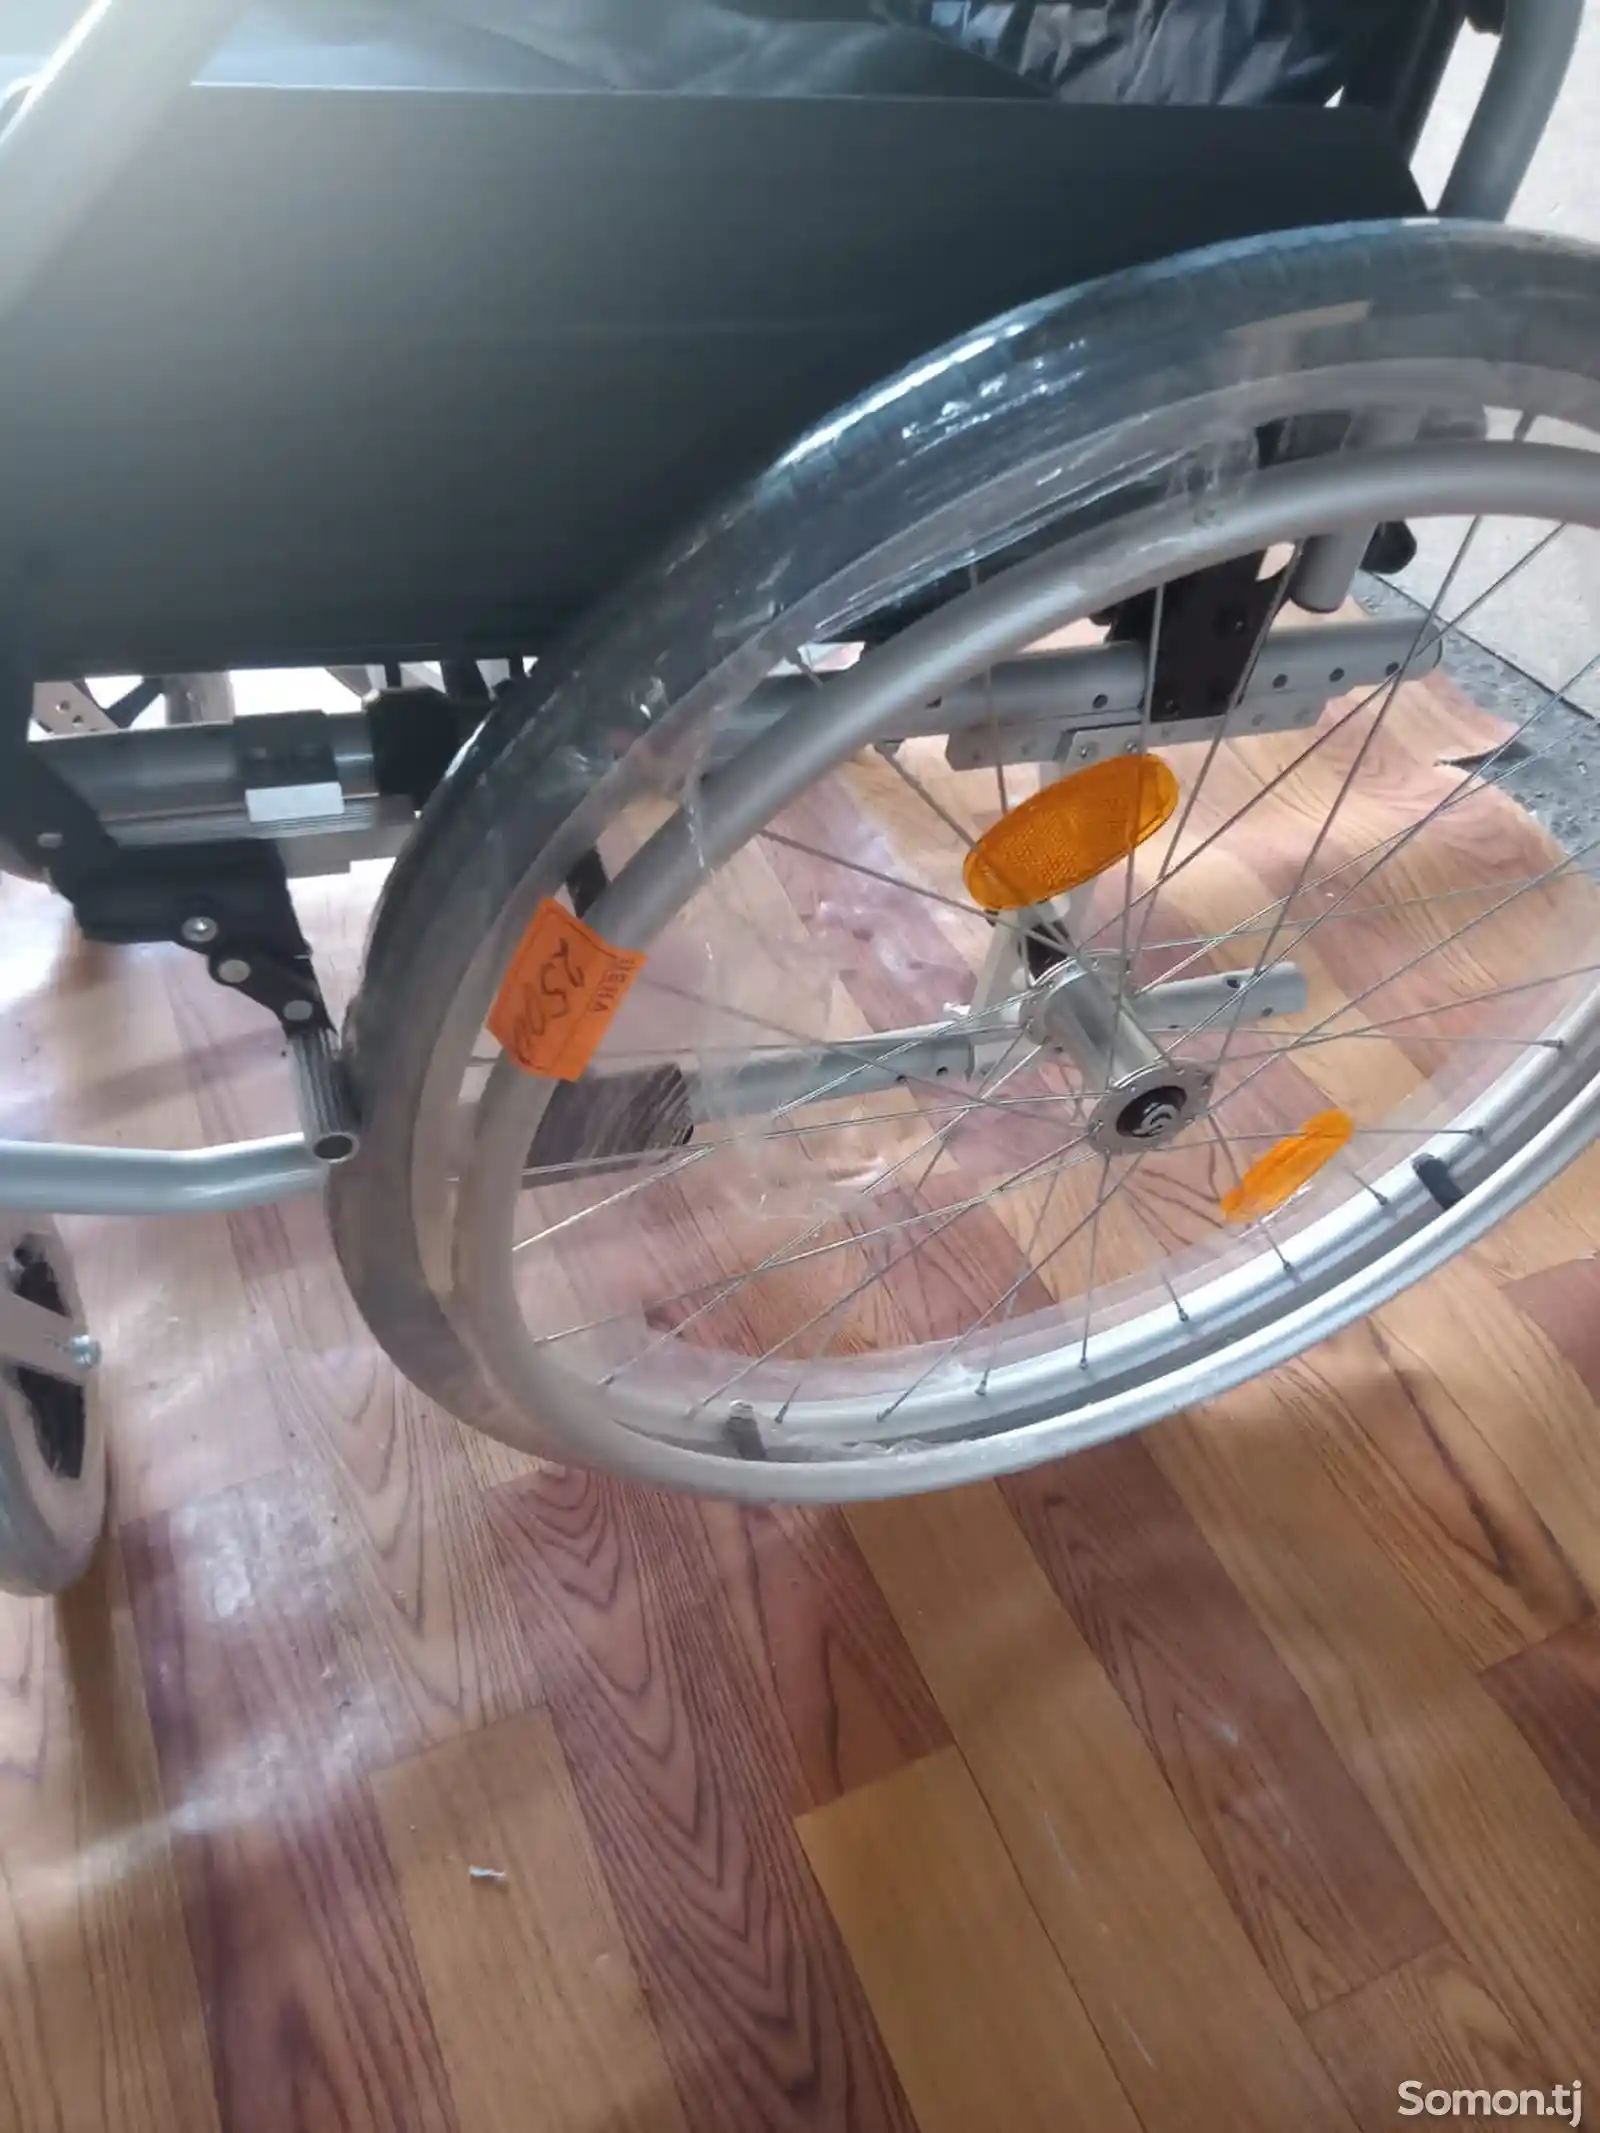 Детская инвалидная коляска-15